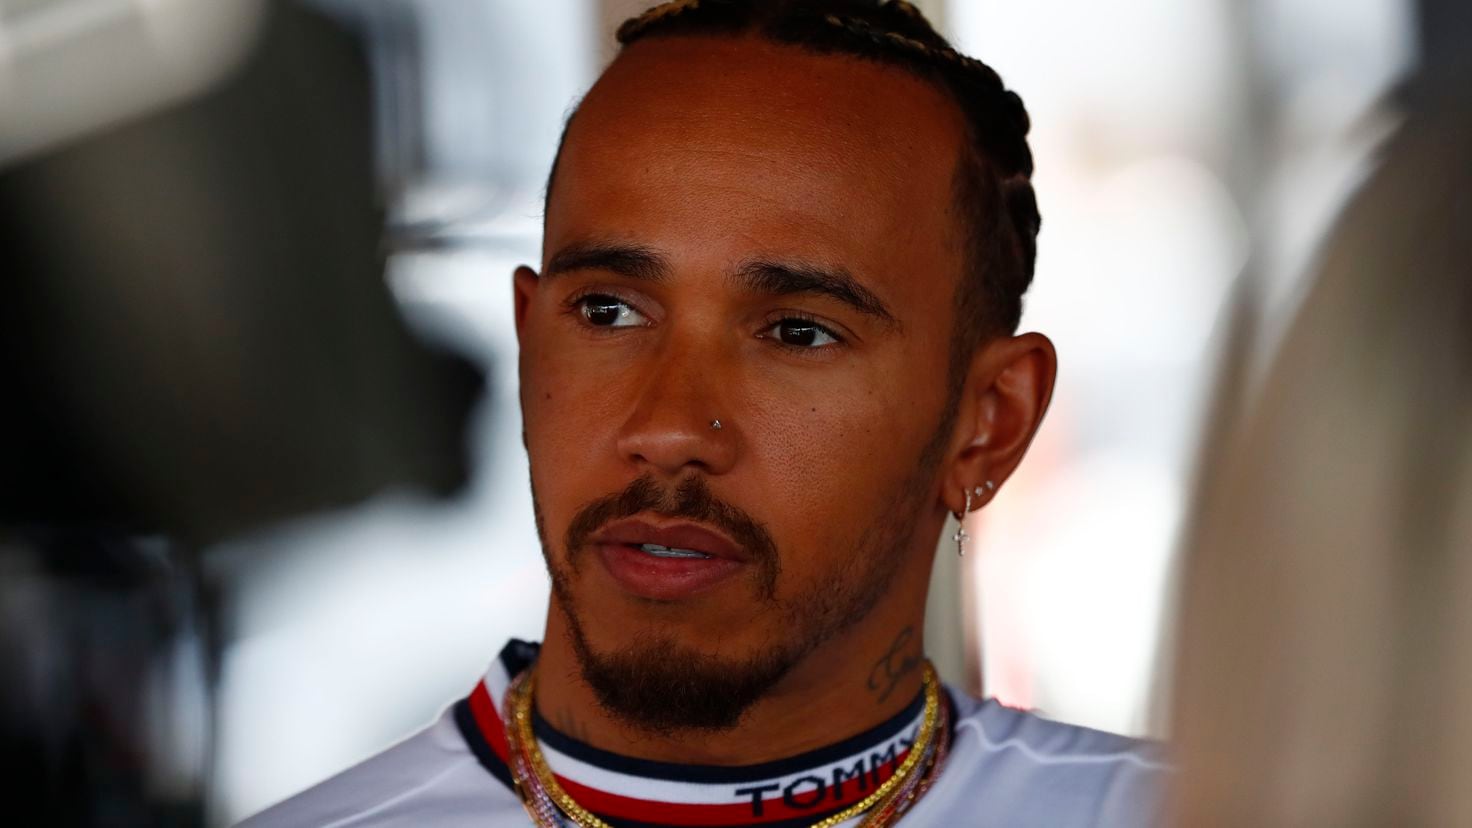 La estrella de Fórmula 1 Lewis Hamilton se separa de Shakira en el Gran Premio de Gran Bretaña